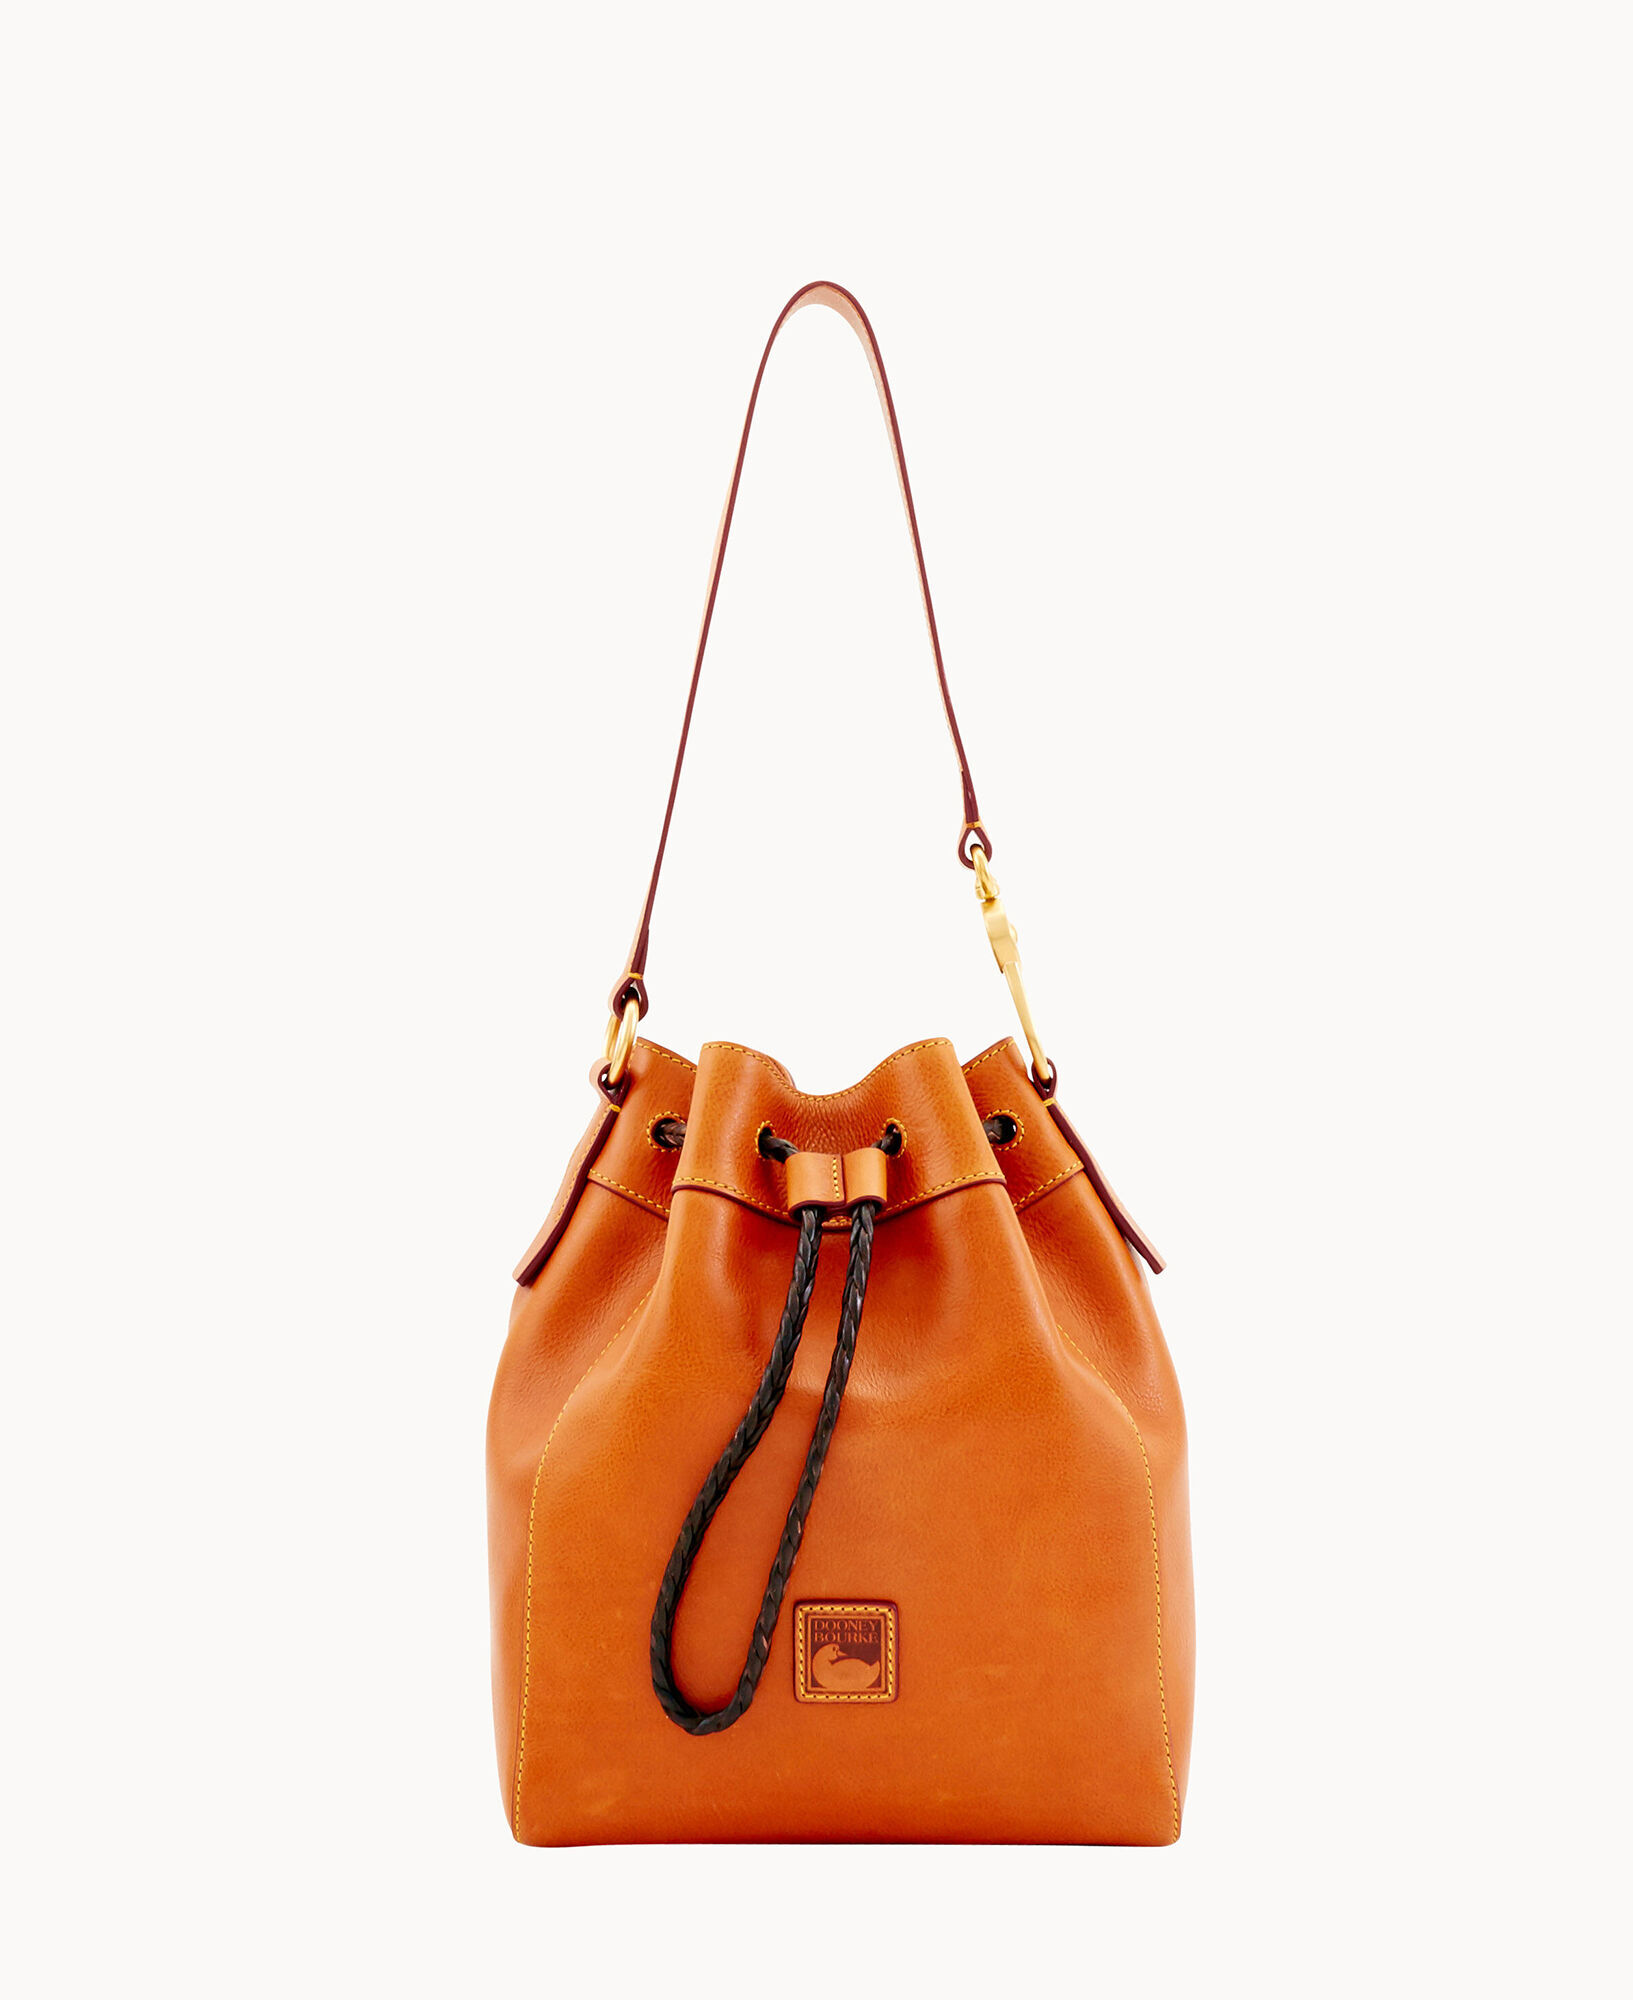 Dooney & Bourke Florentine Hattie Leather Drawstring Bag - Natural